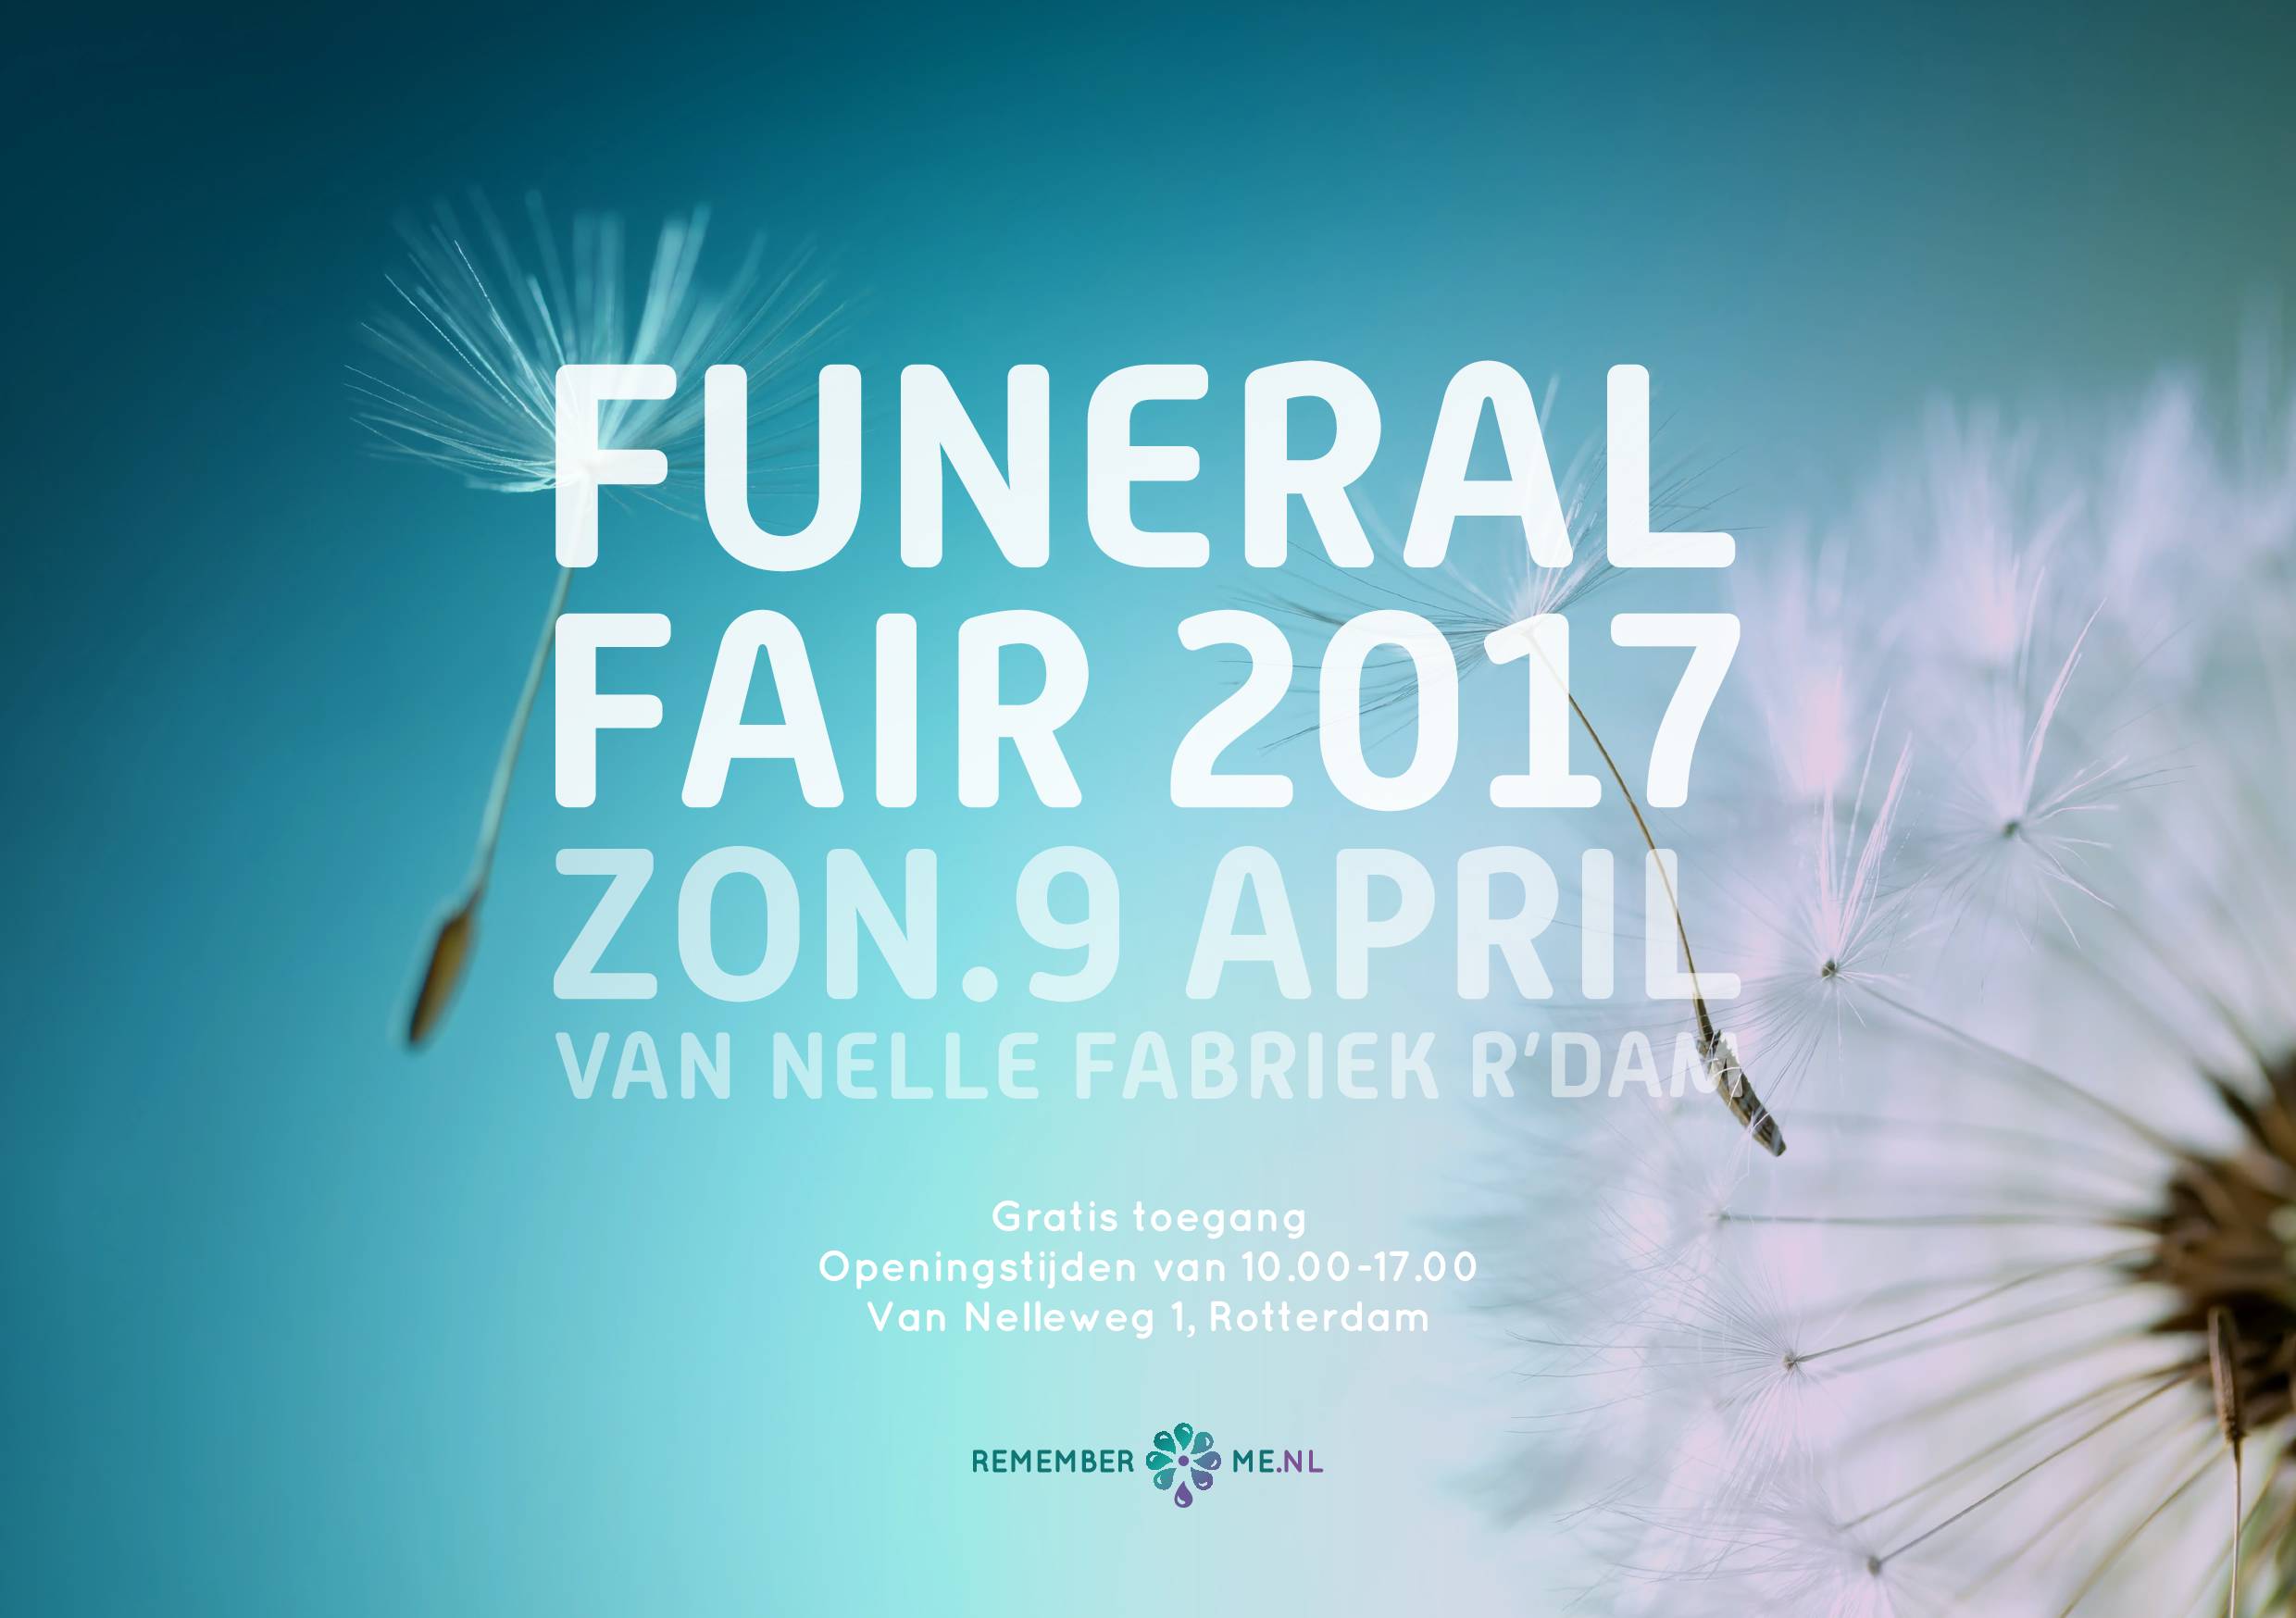 Funeral fair 2017